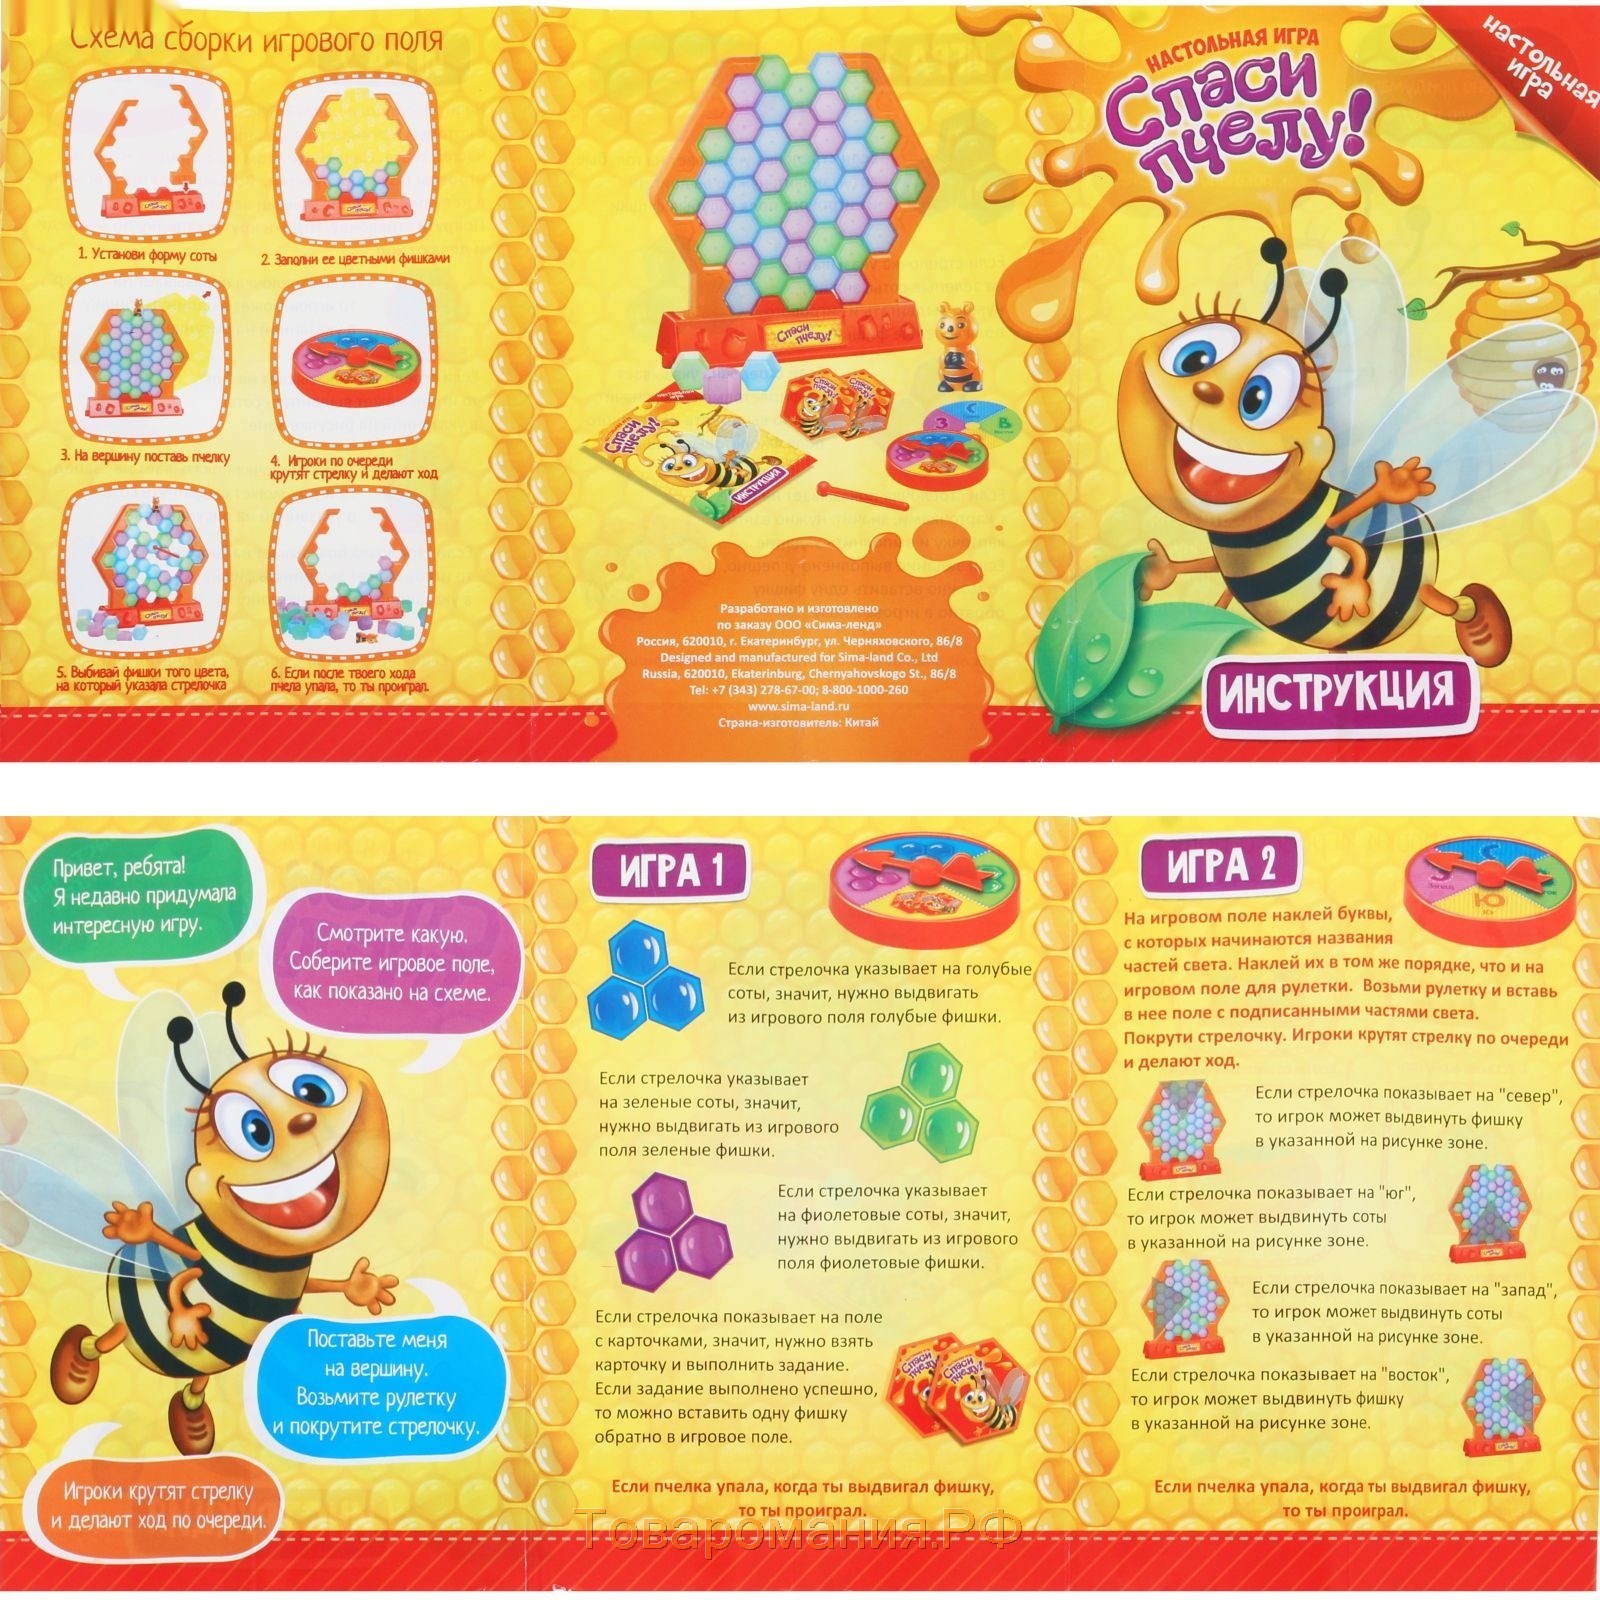 Настольная игра на ловкость и реакцию «Спаси пчелу»: игровое поле, рулетка, пчела, 2 палочки, карточки игровые, инструкция